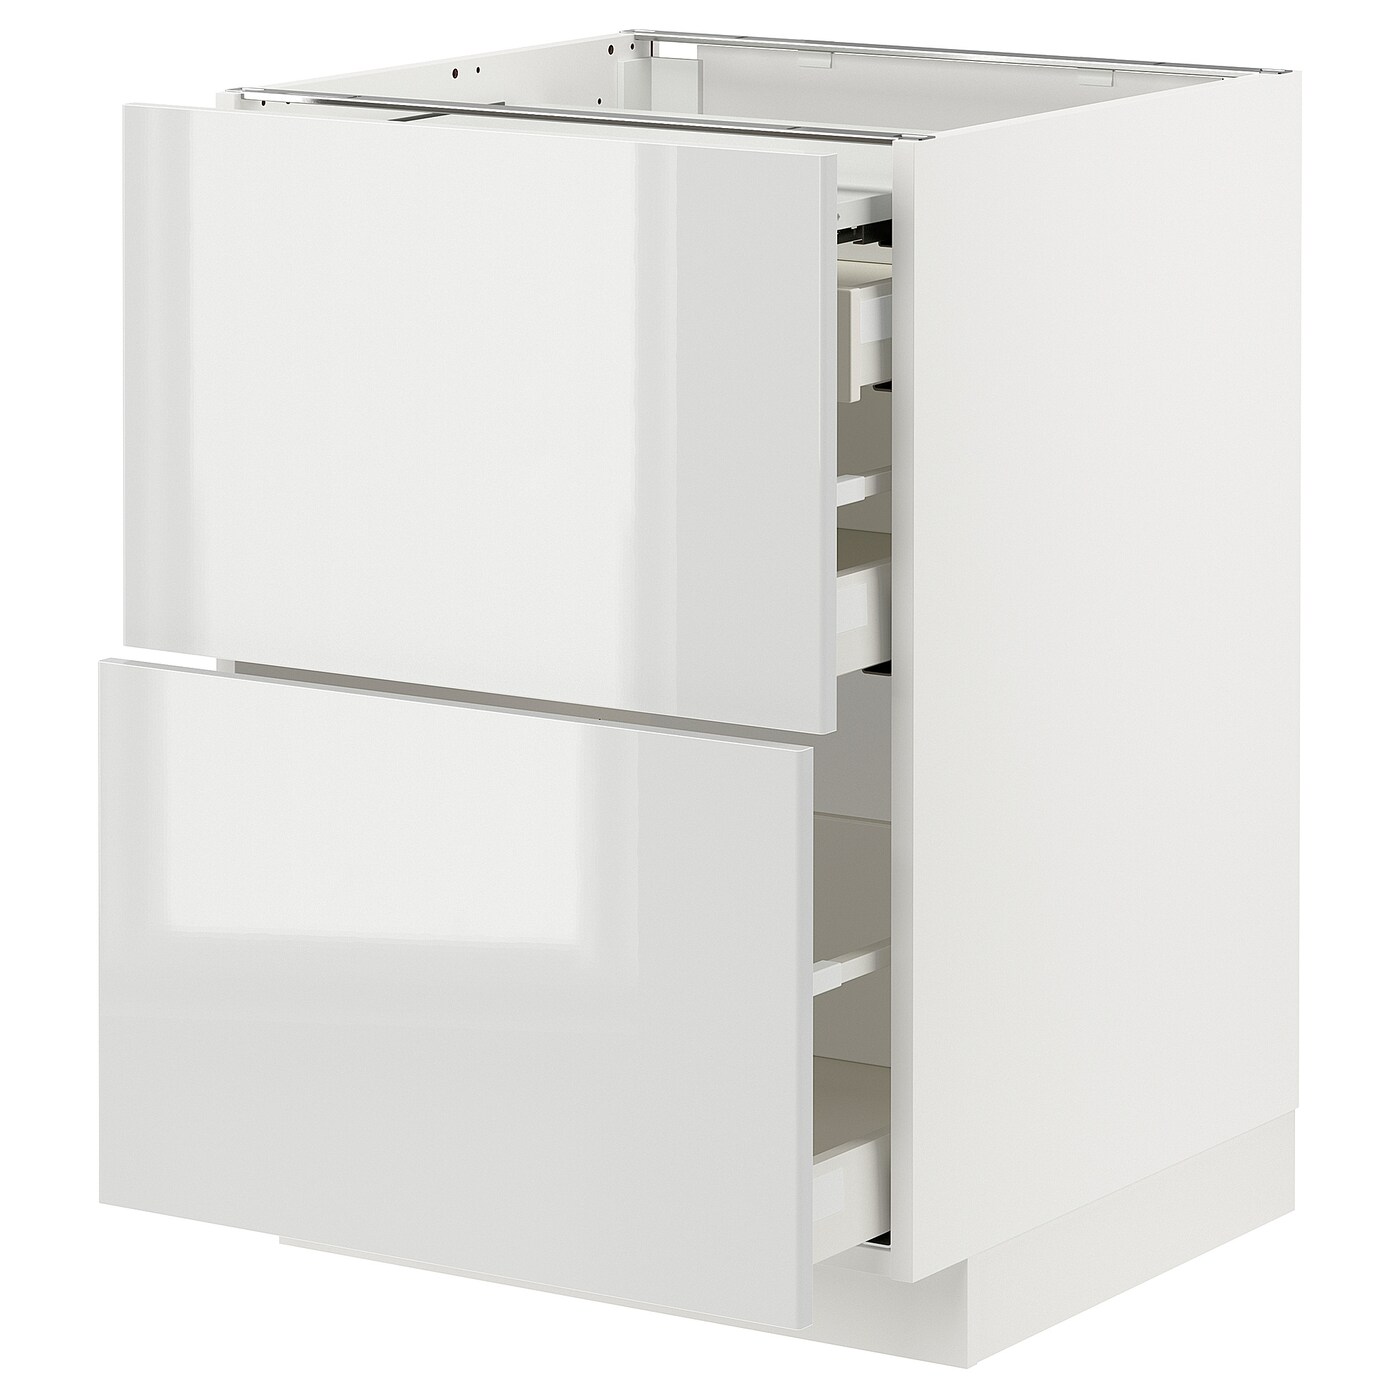 Напольный шкаф с выдвижной столешницей  - IKEA METOD MAXIMERA, 88x61,6x80см, белый, МЕТОД МАКСИМЕРА ИКЕА